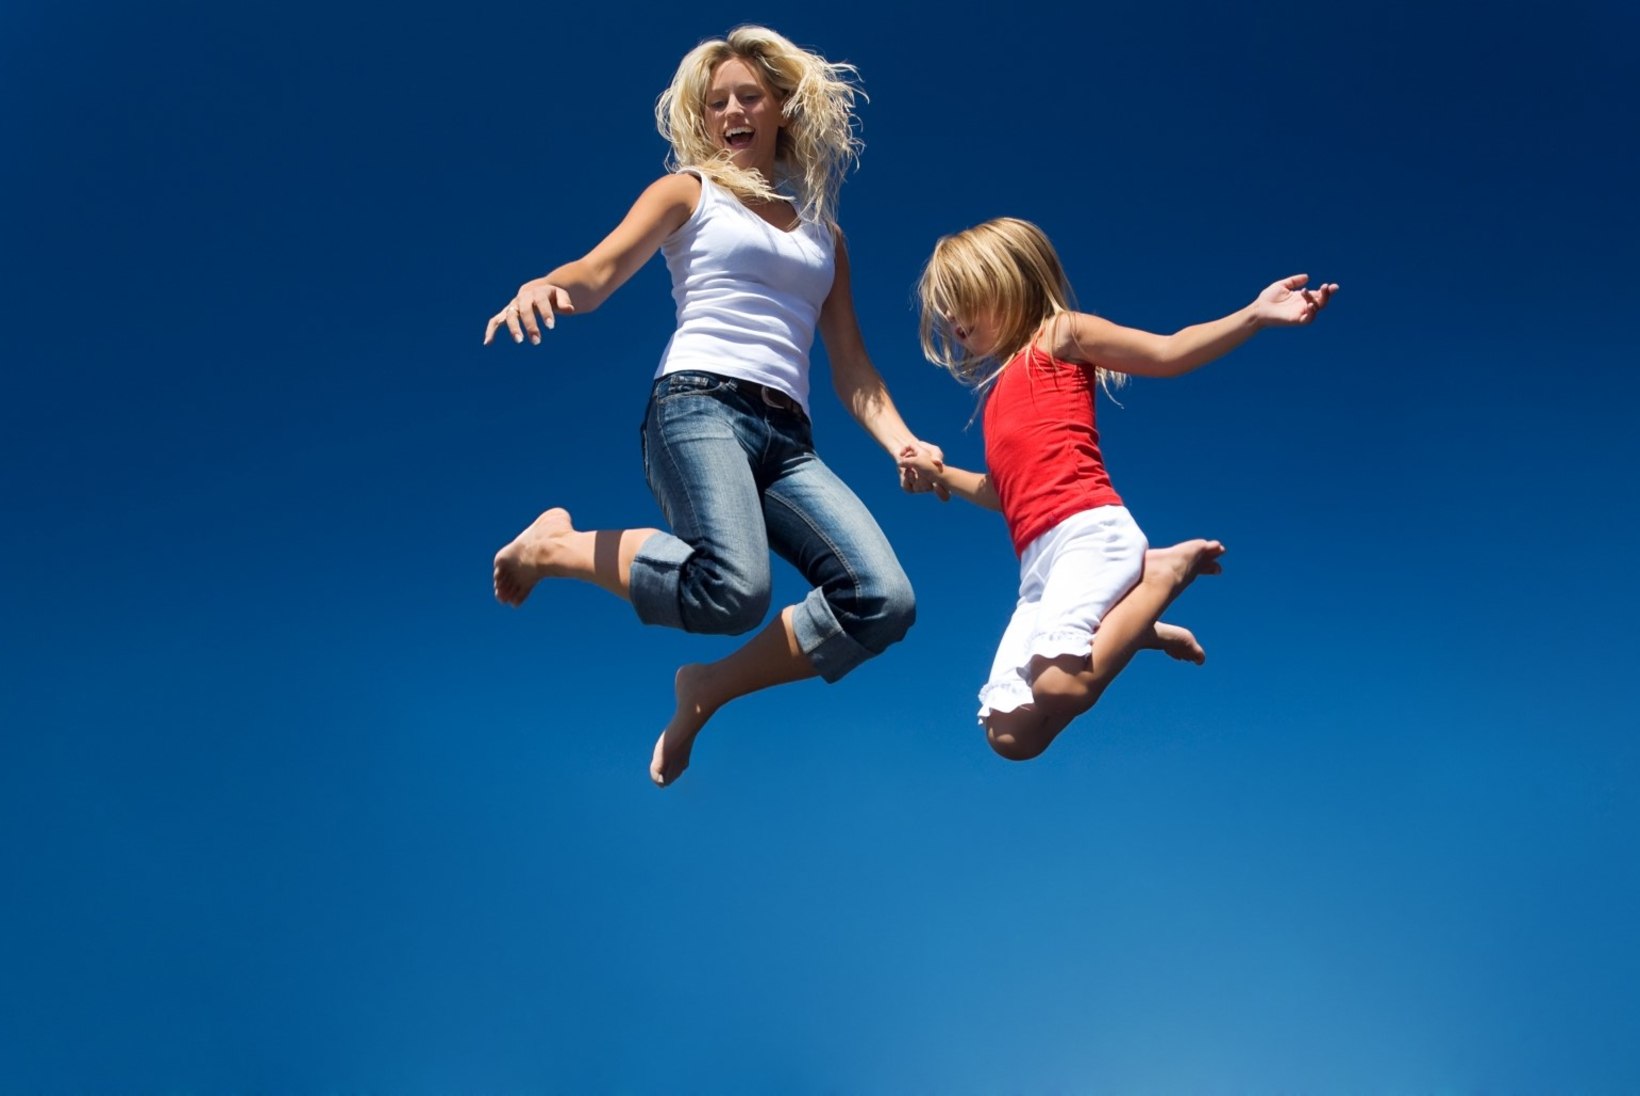 6 head põhjust, miks on batuudil hüppamine tervisele kasulik!